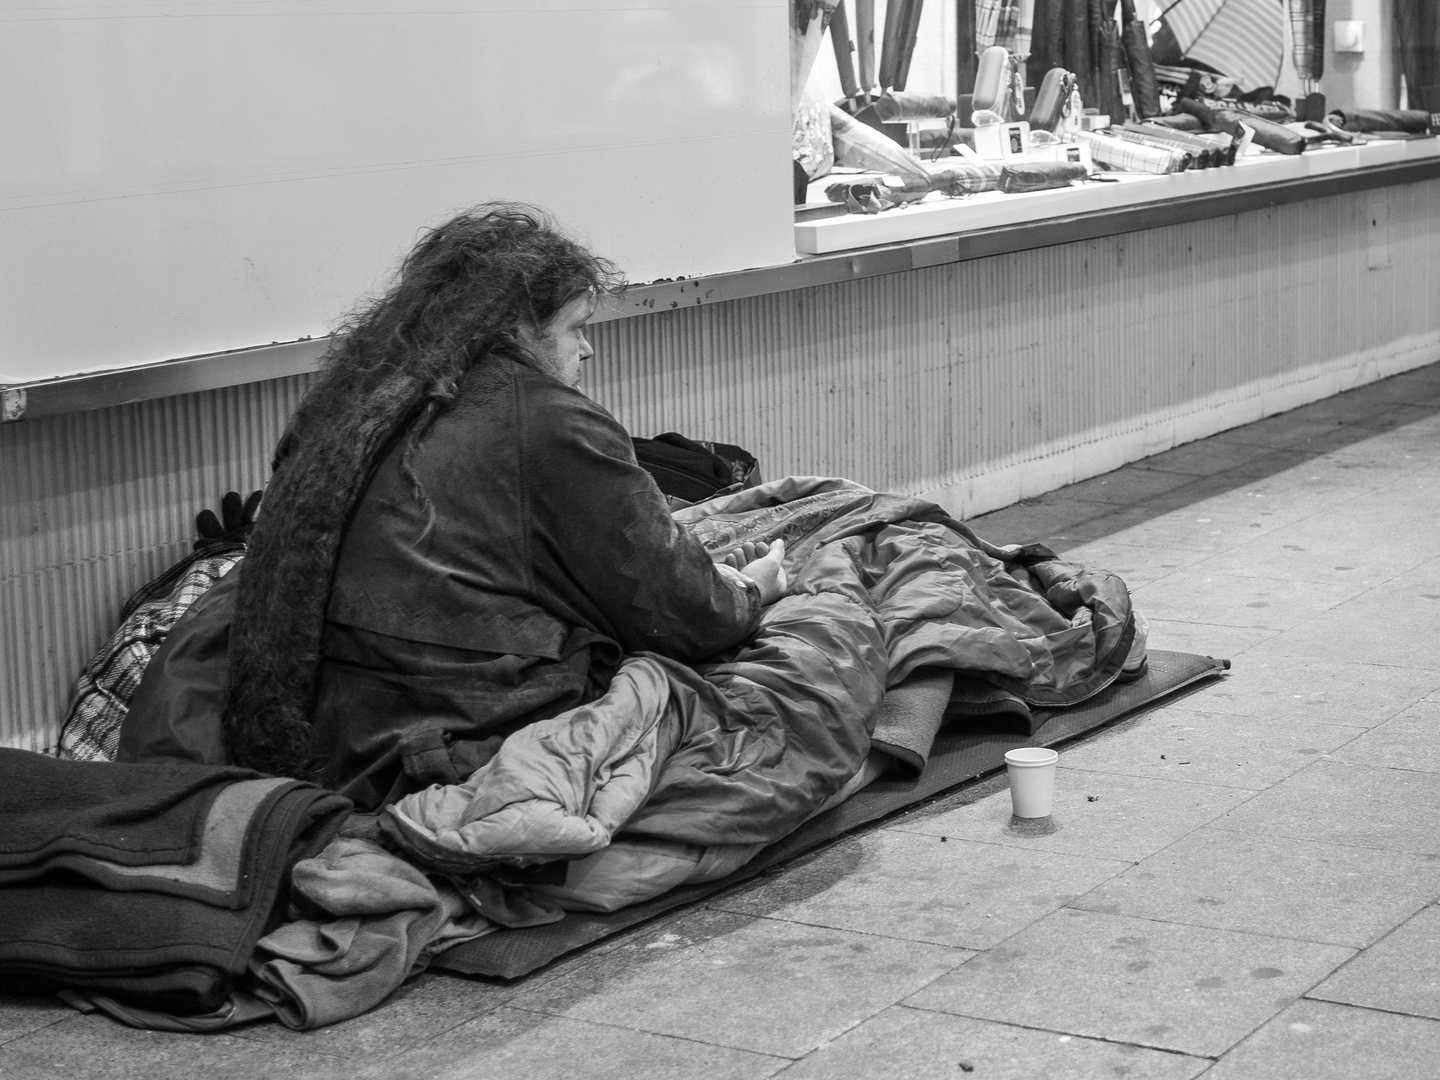 Obdachlos